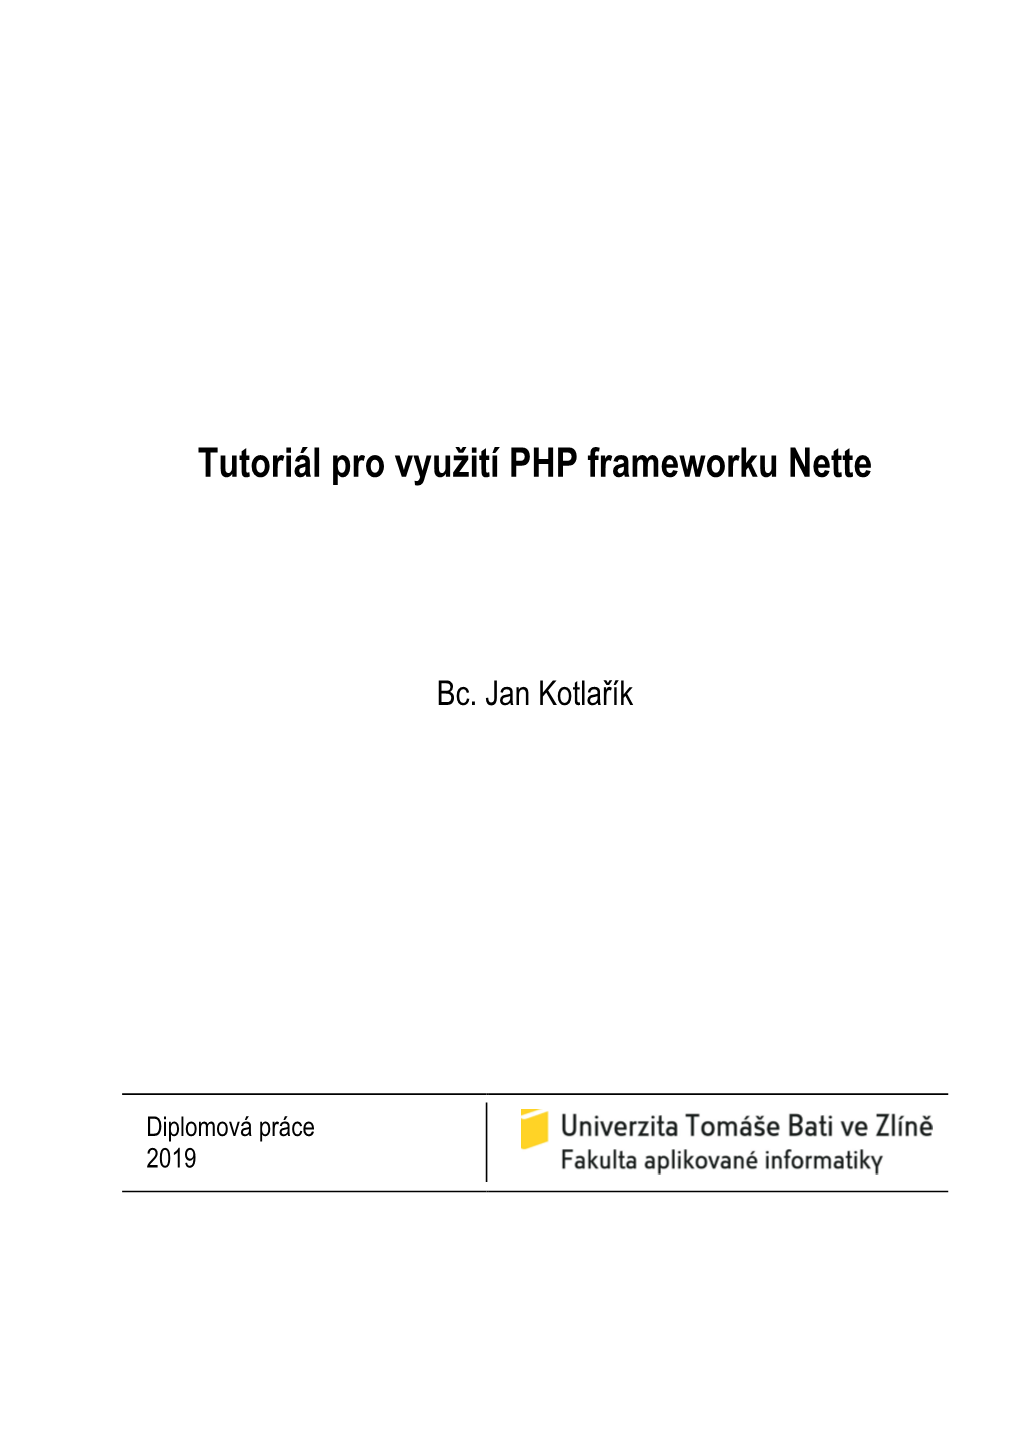 Tutoriál Pro Využití PHP Frameworku Nette